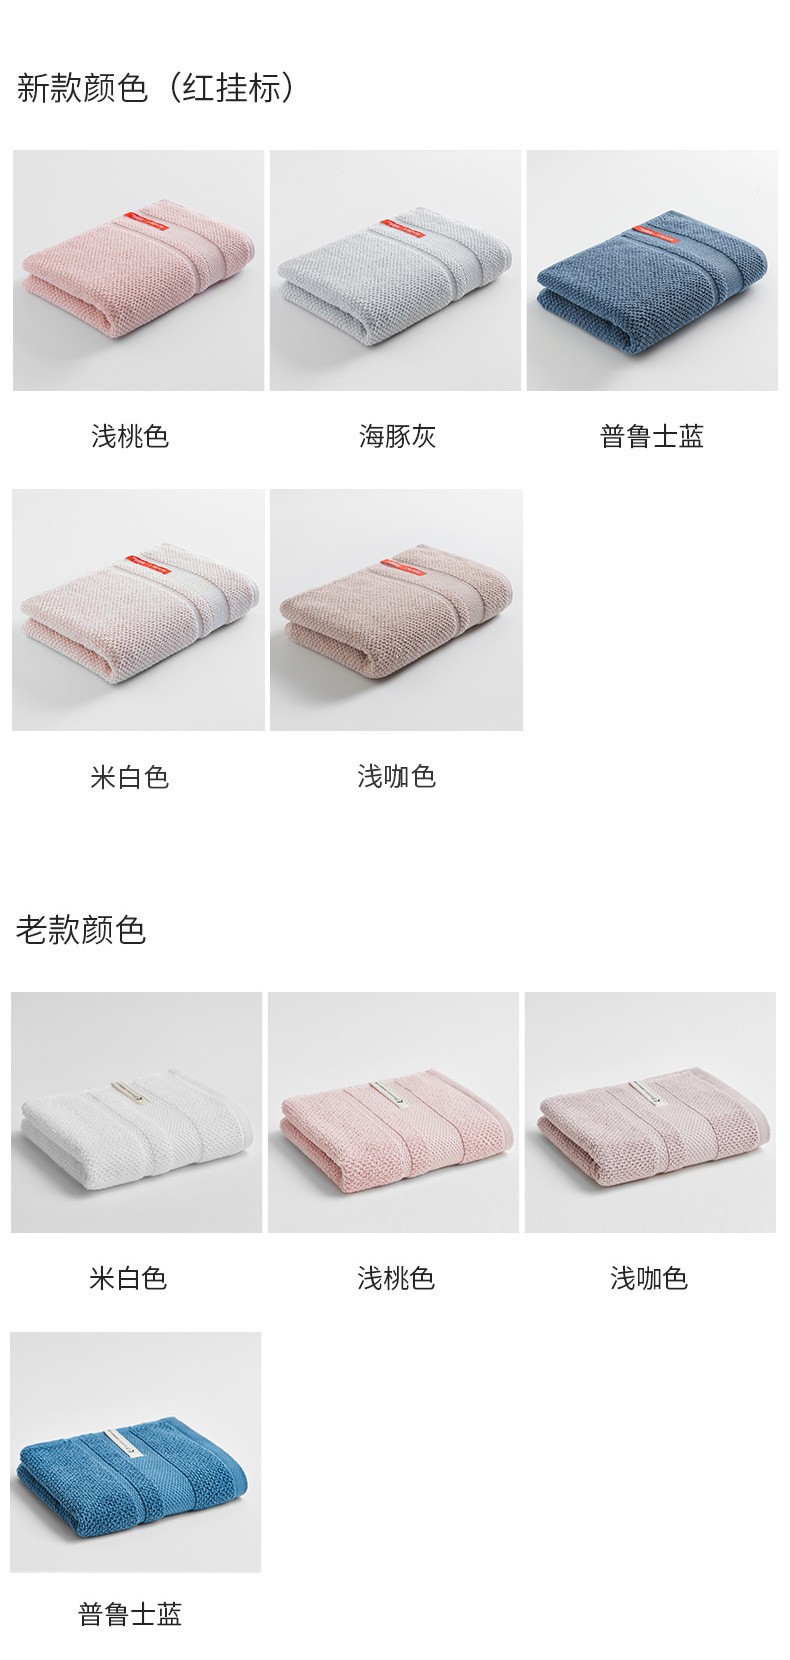 三利提花32股时尚毛巾产品